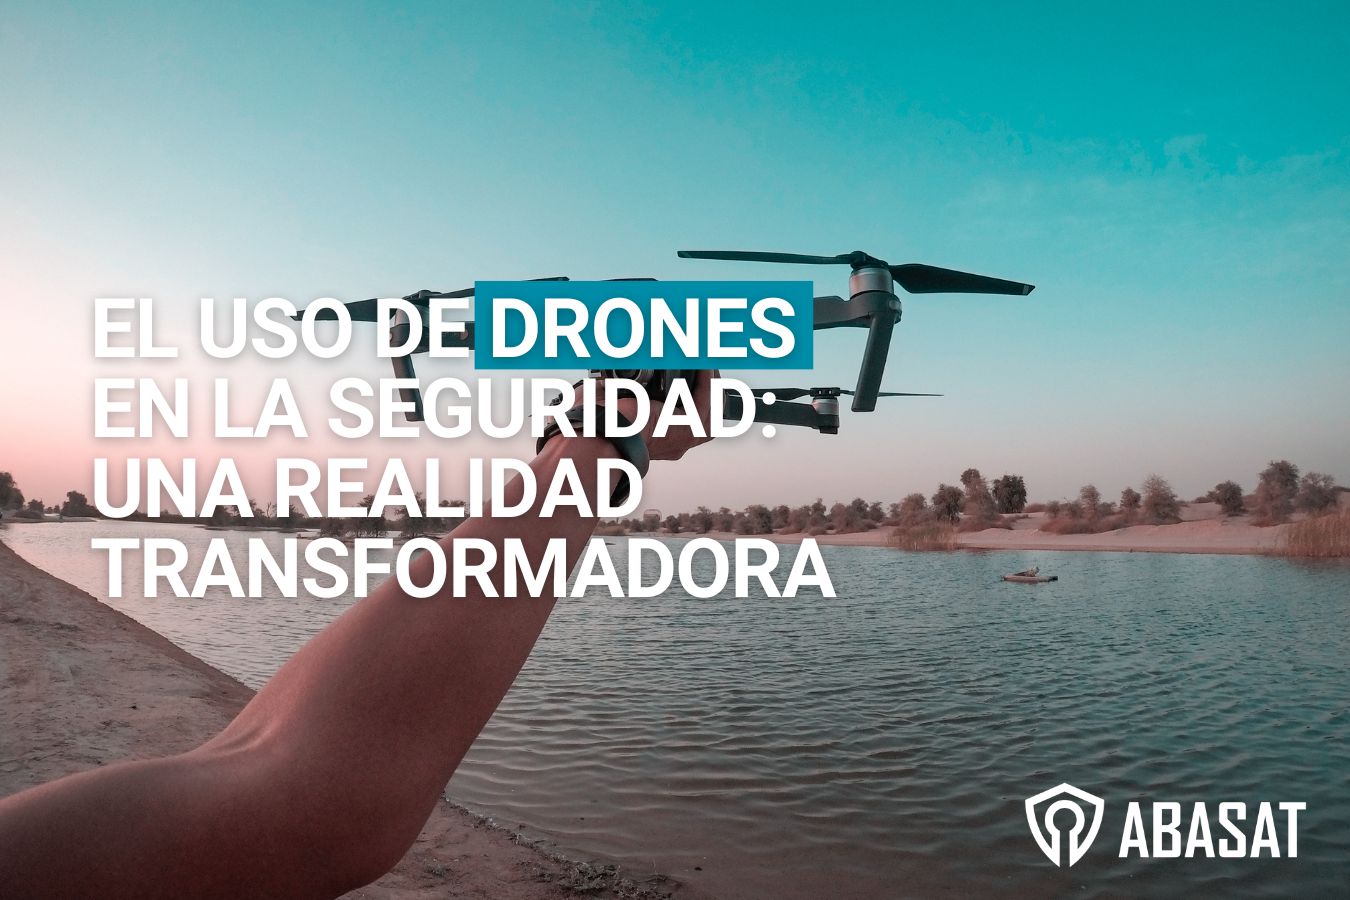 El uso de drones en la seguridad: Un realidad transformadora